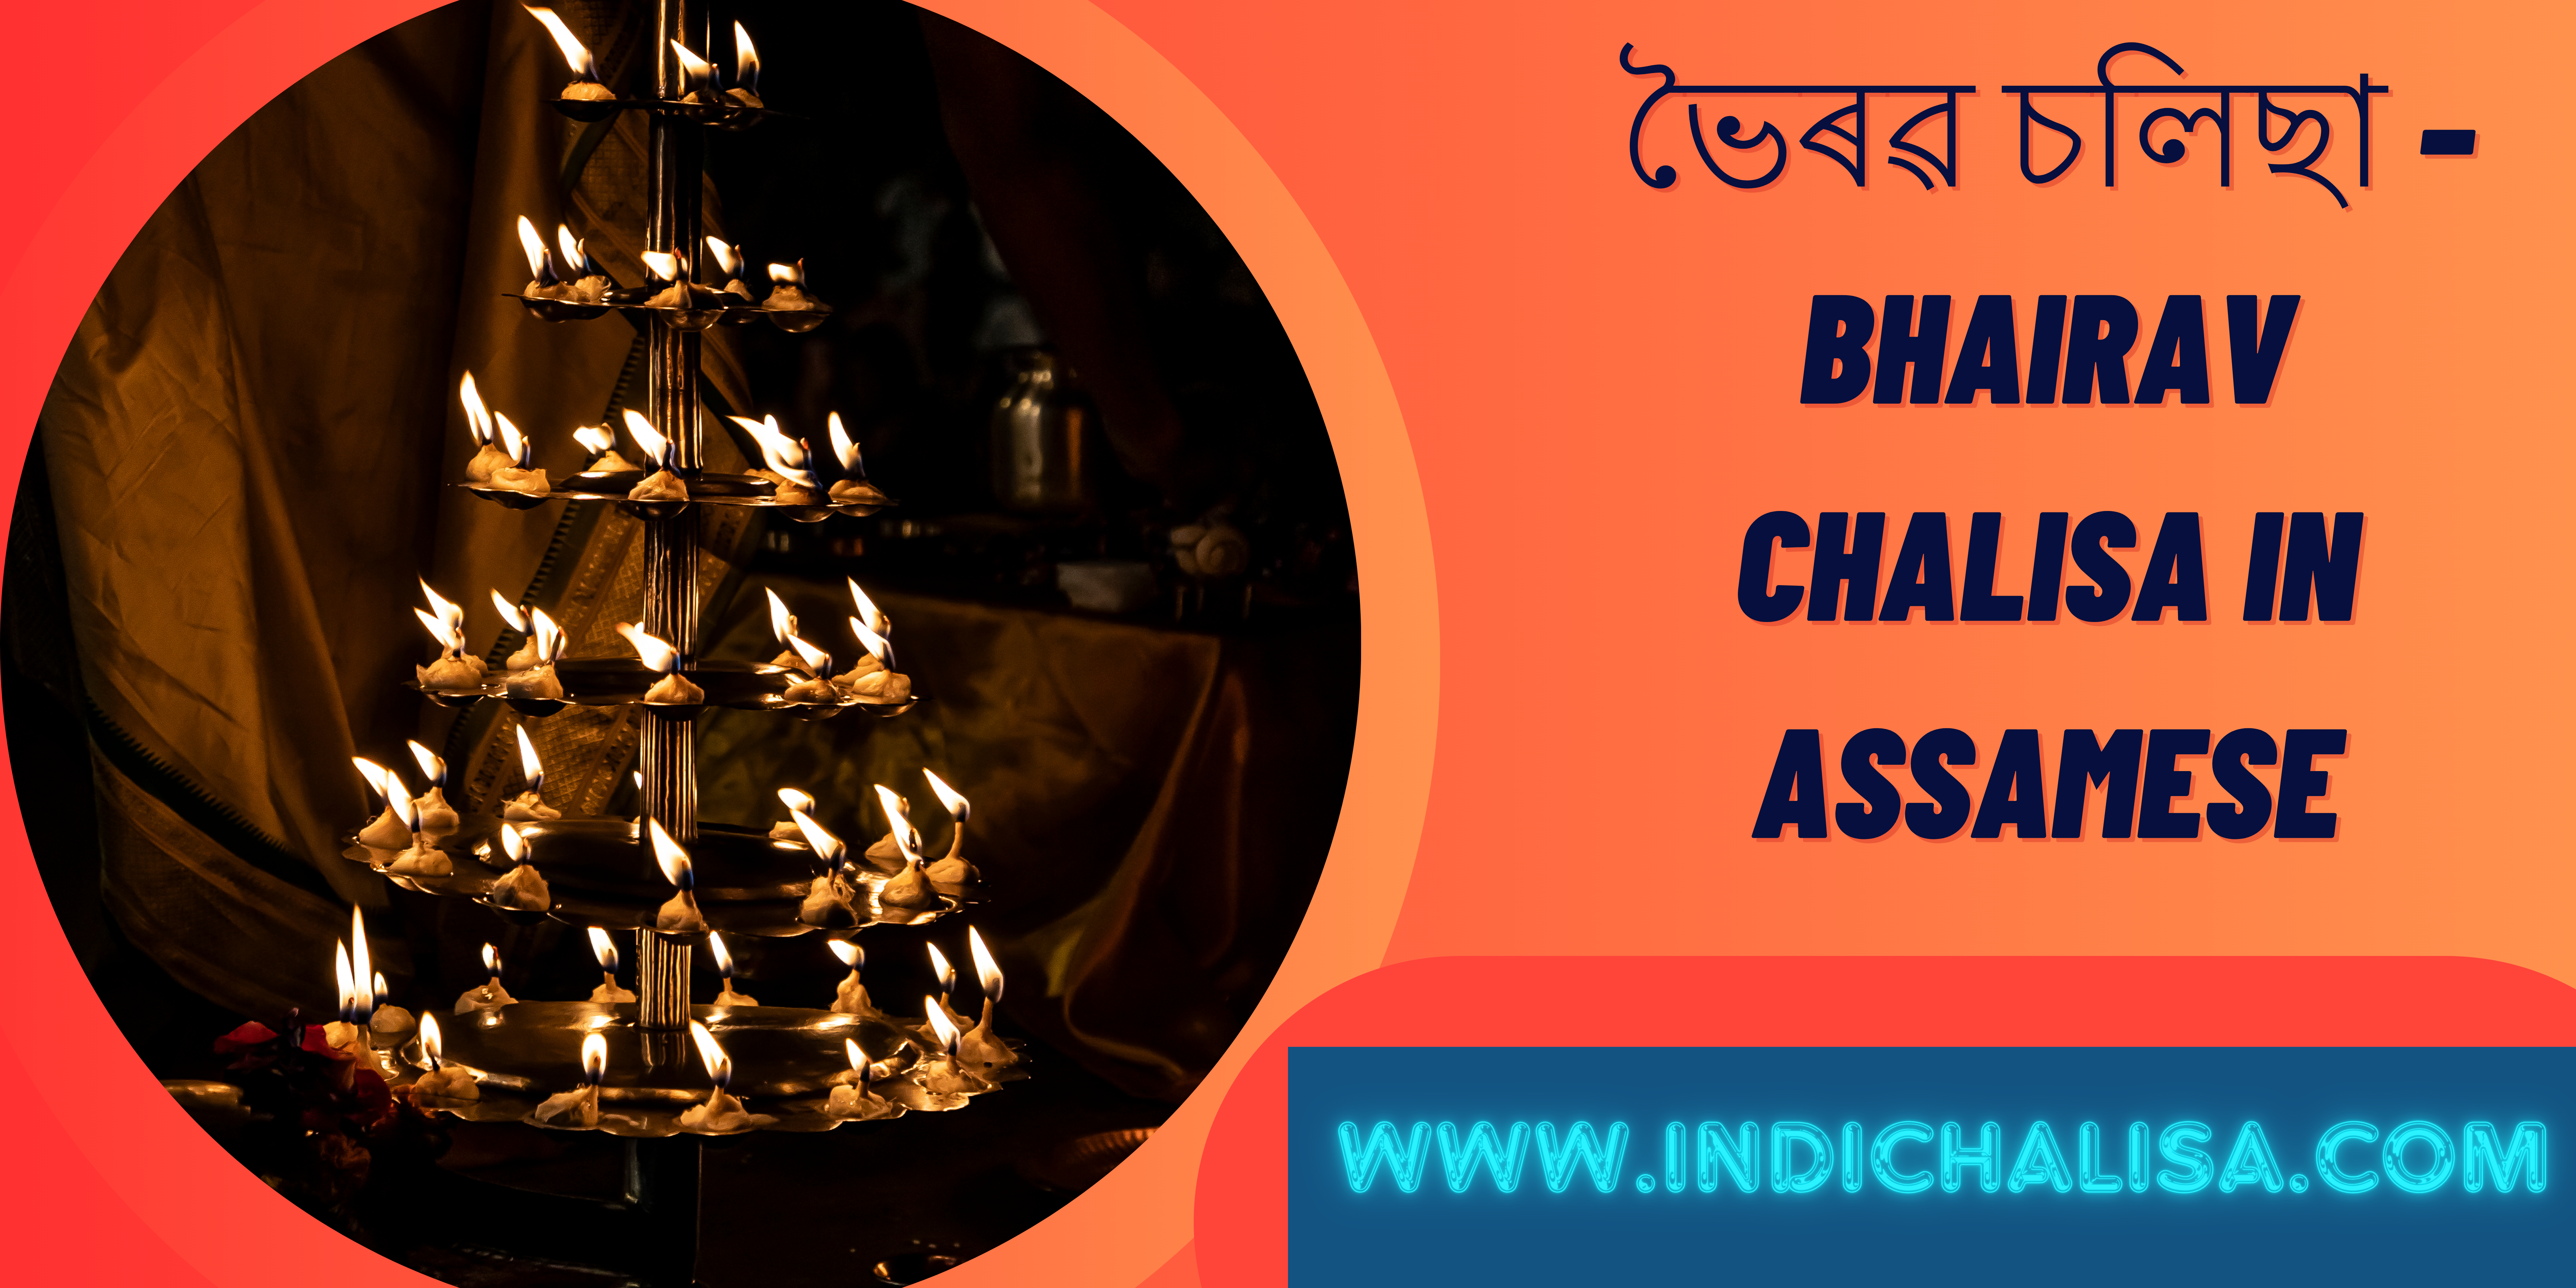 Bhairav Chalisa In Assamese|Bhairav Chalisa In Assamese|Indichalisa|Indichalisa